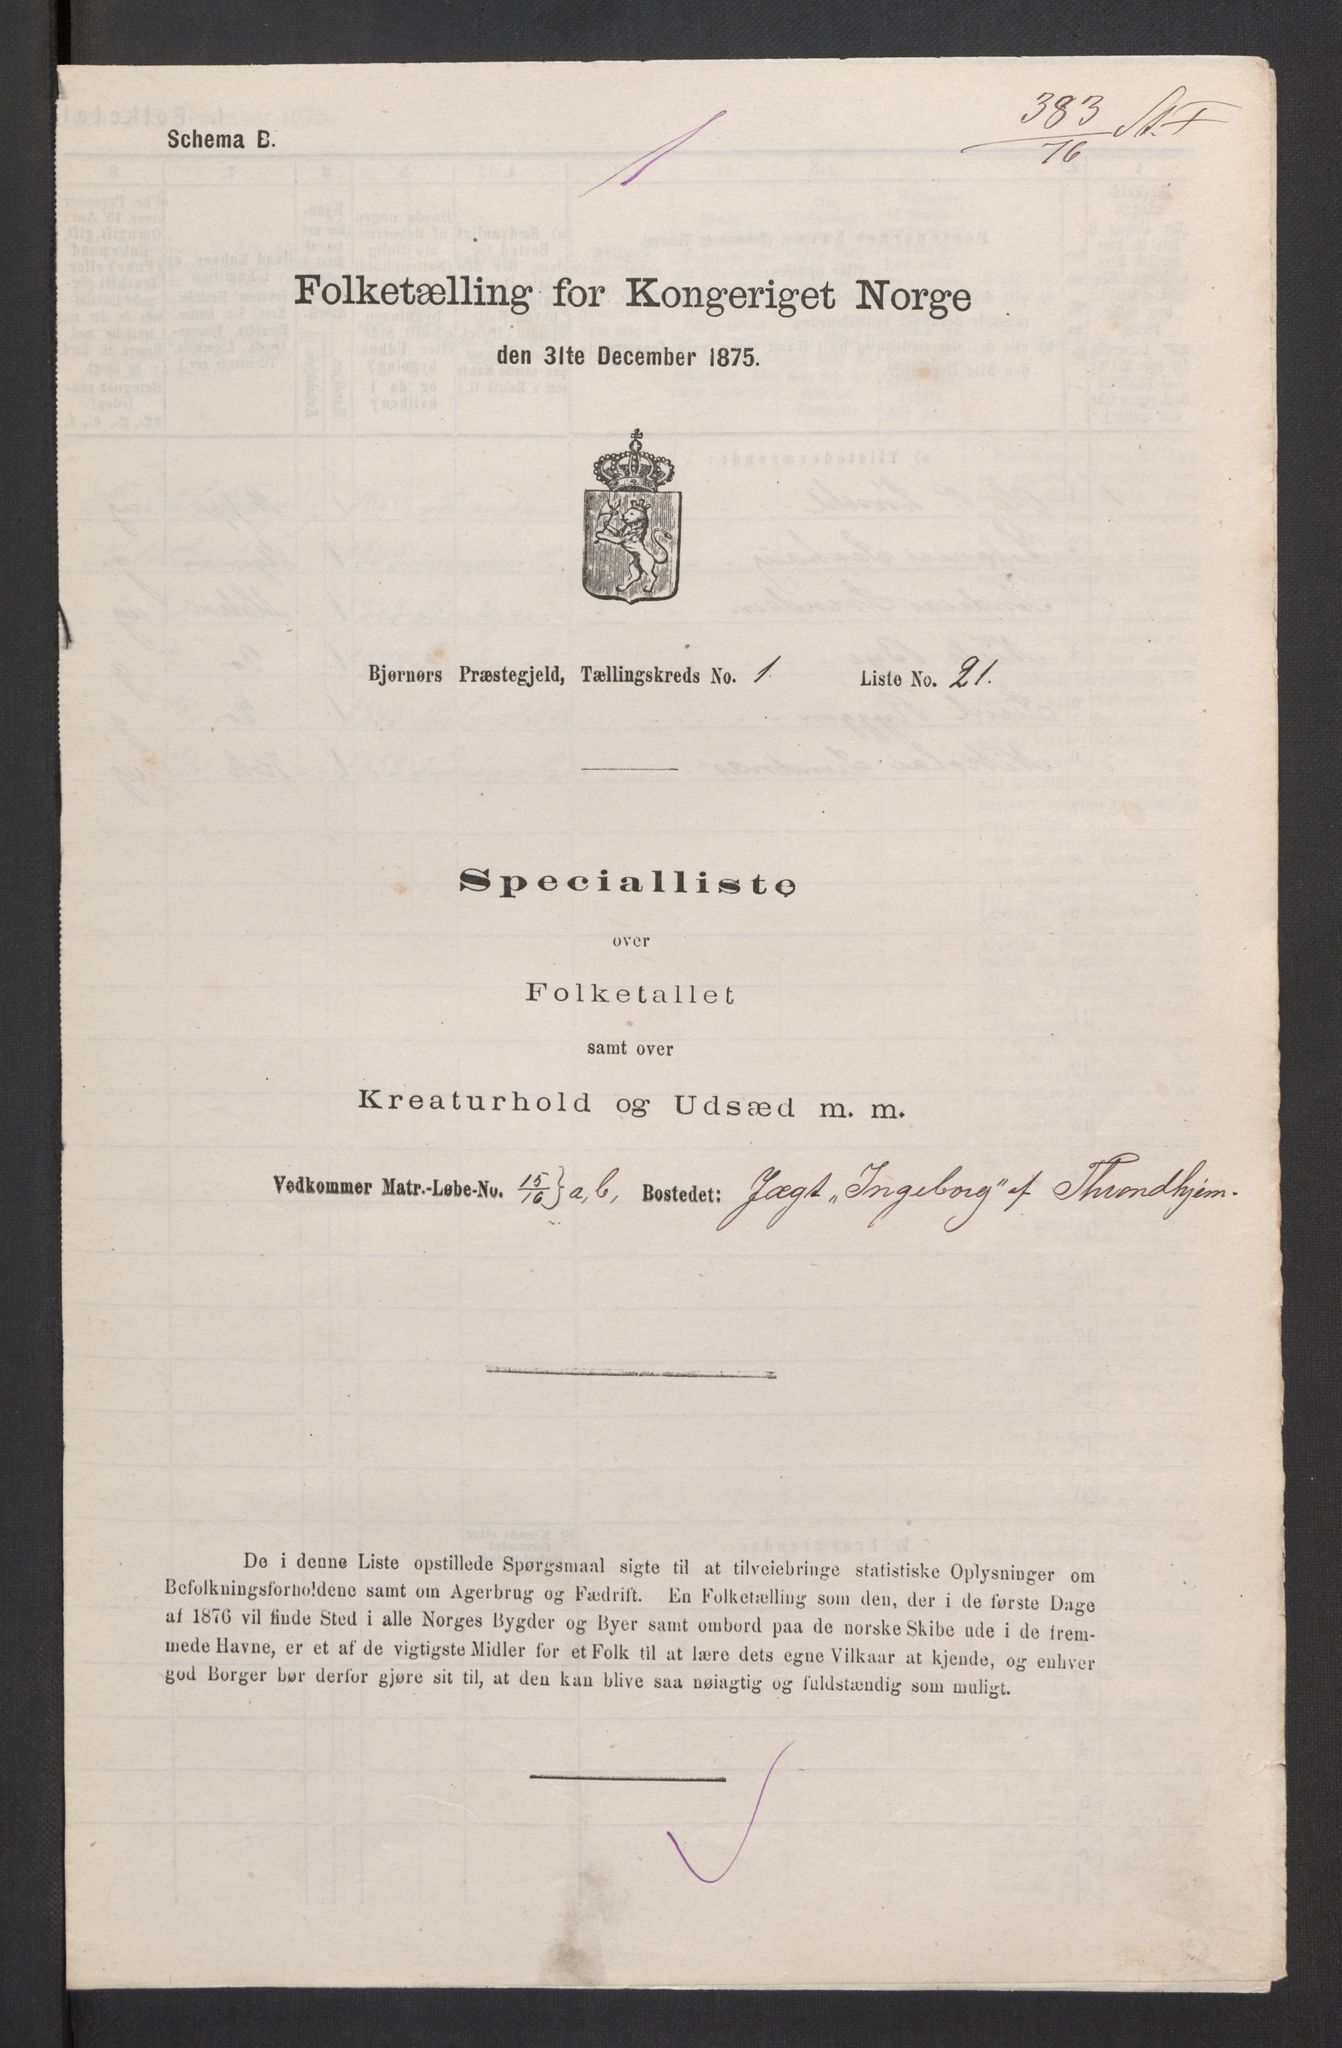 RA, Folketelling 1875, skipslister: Skip i innenrikske havner, hjemmehørende i byer og ladesteder, 1875, s. 1160